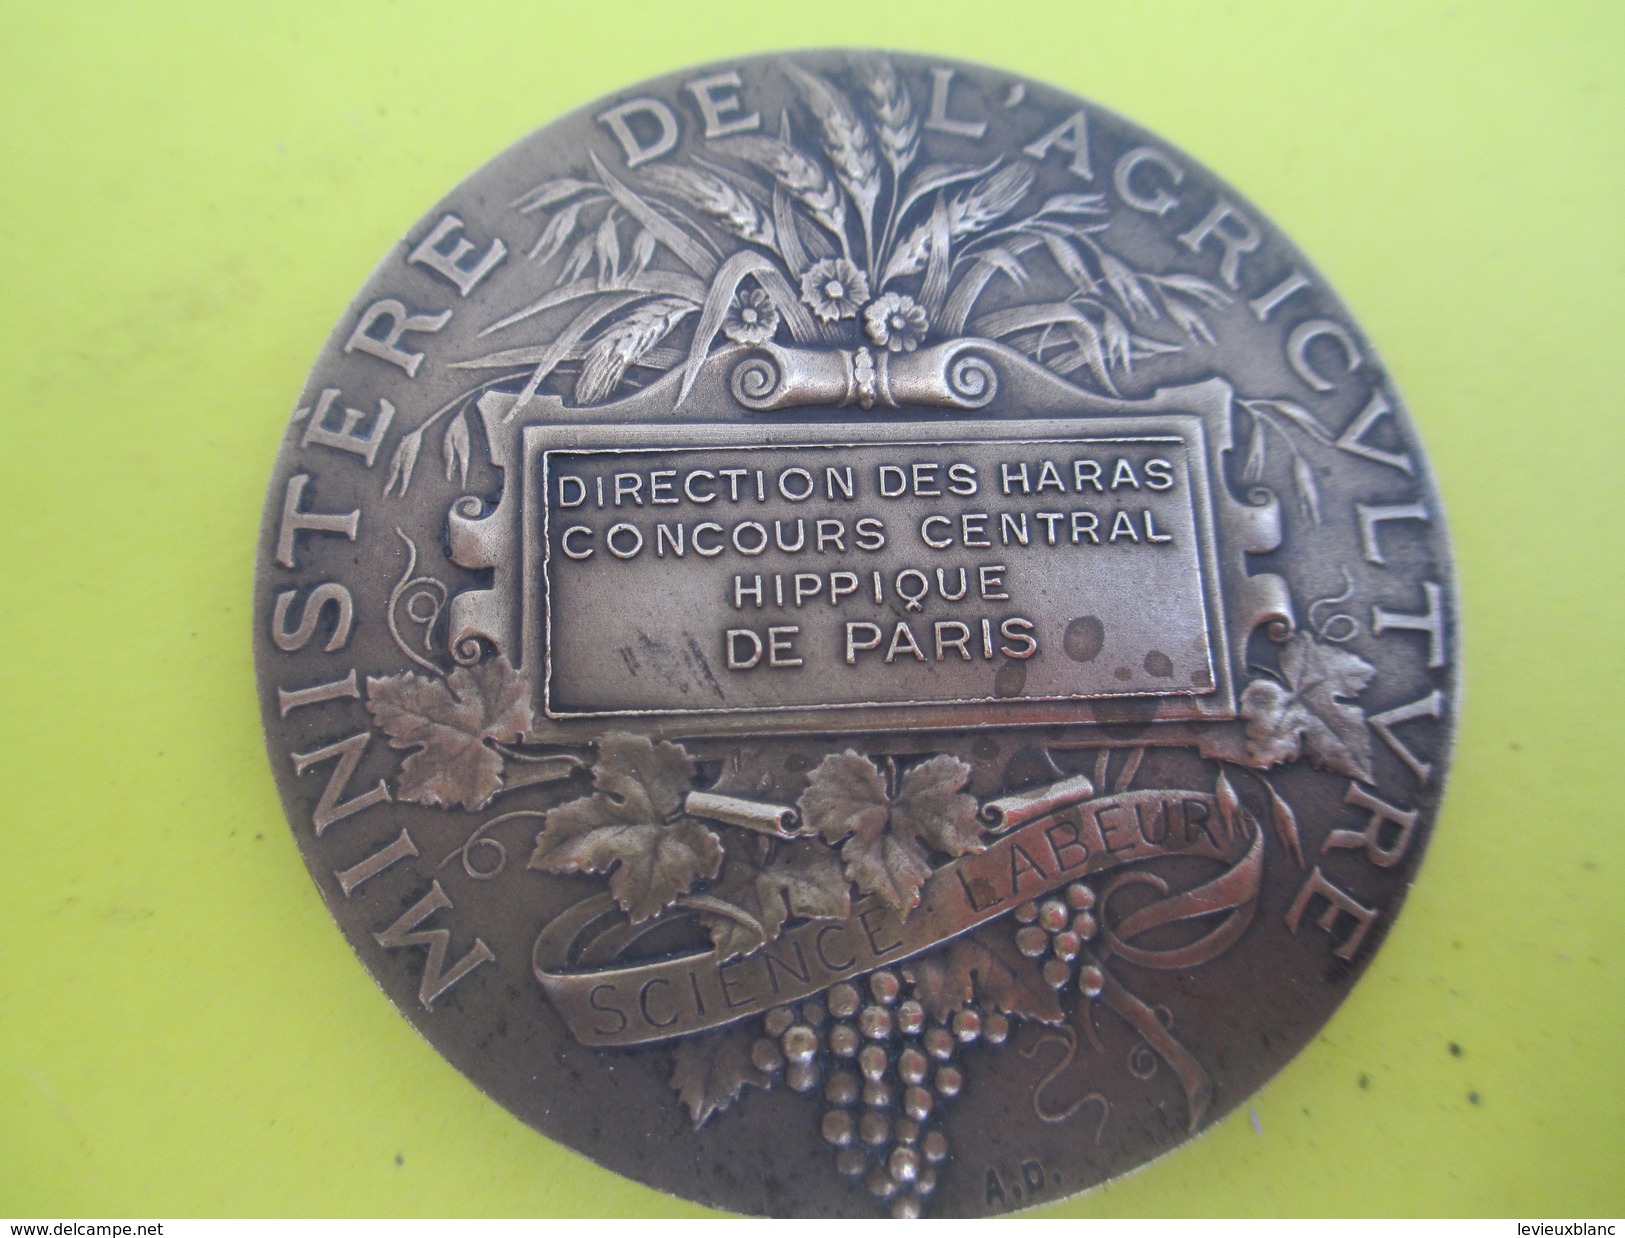 Médaille De Table/Minist. De L'Agric/Direction Des Haras/Concours Central Hippique/Paris/Alphée DUBOIS/Vers 1920  SPO214 - Equitazione